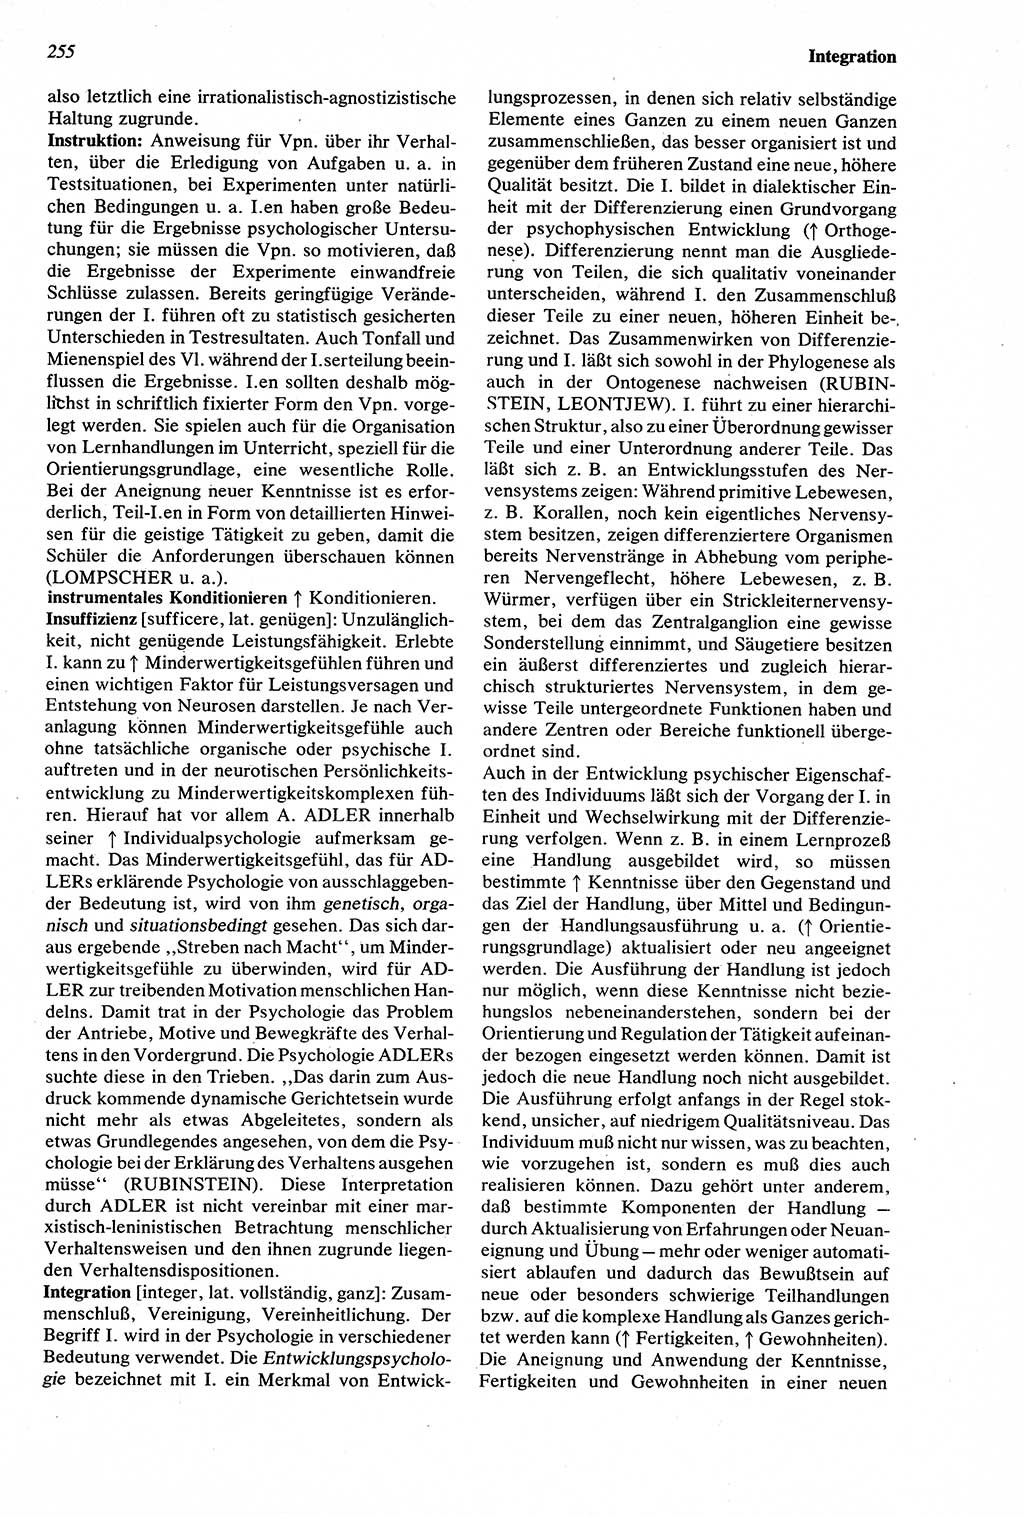 Wörterbuch der Psychologie [Deutsche Demokratische Republik (DDR)] 1976, Seite 255 (Wb. Psych. DDR 1976, S. 255)